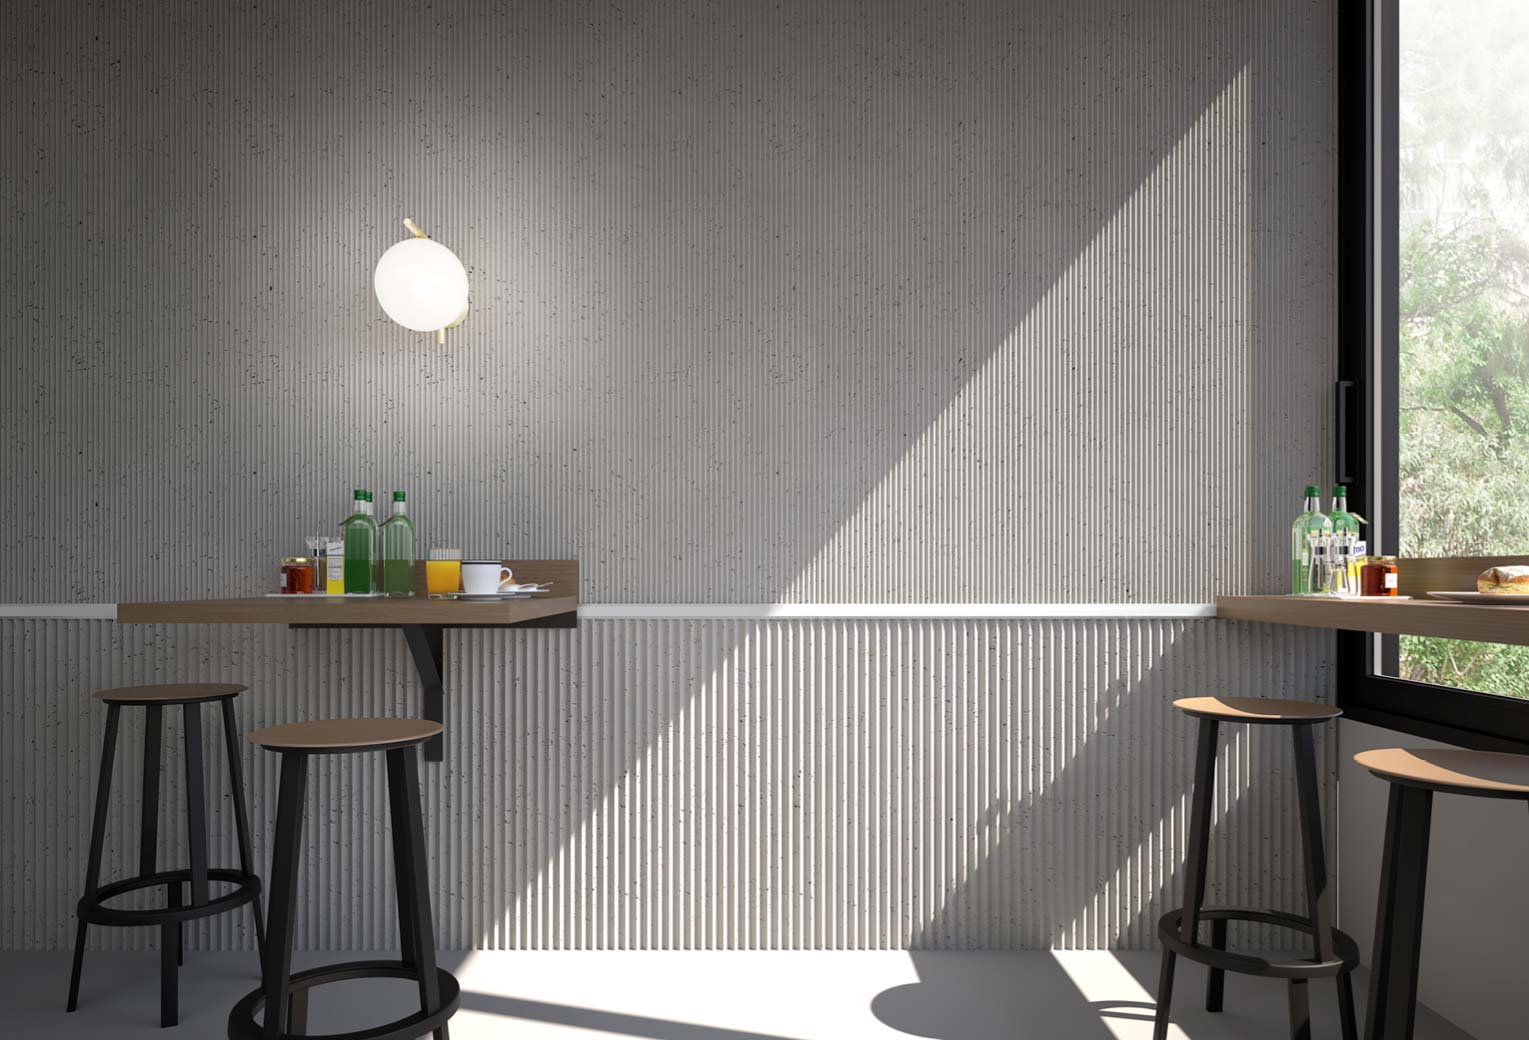 Panel decorativo SPIRIT imitación cemento en cafetería con perfil blanco combinado